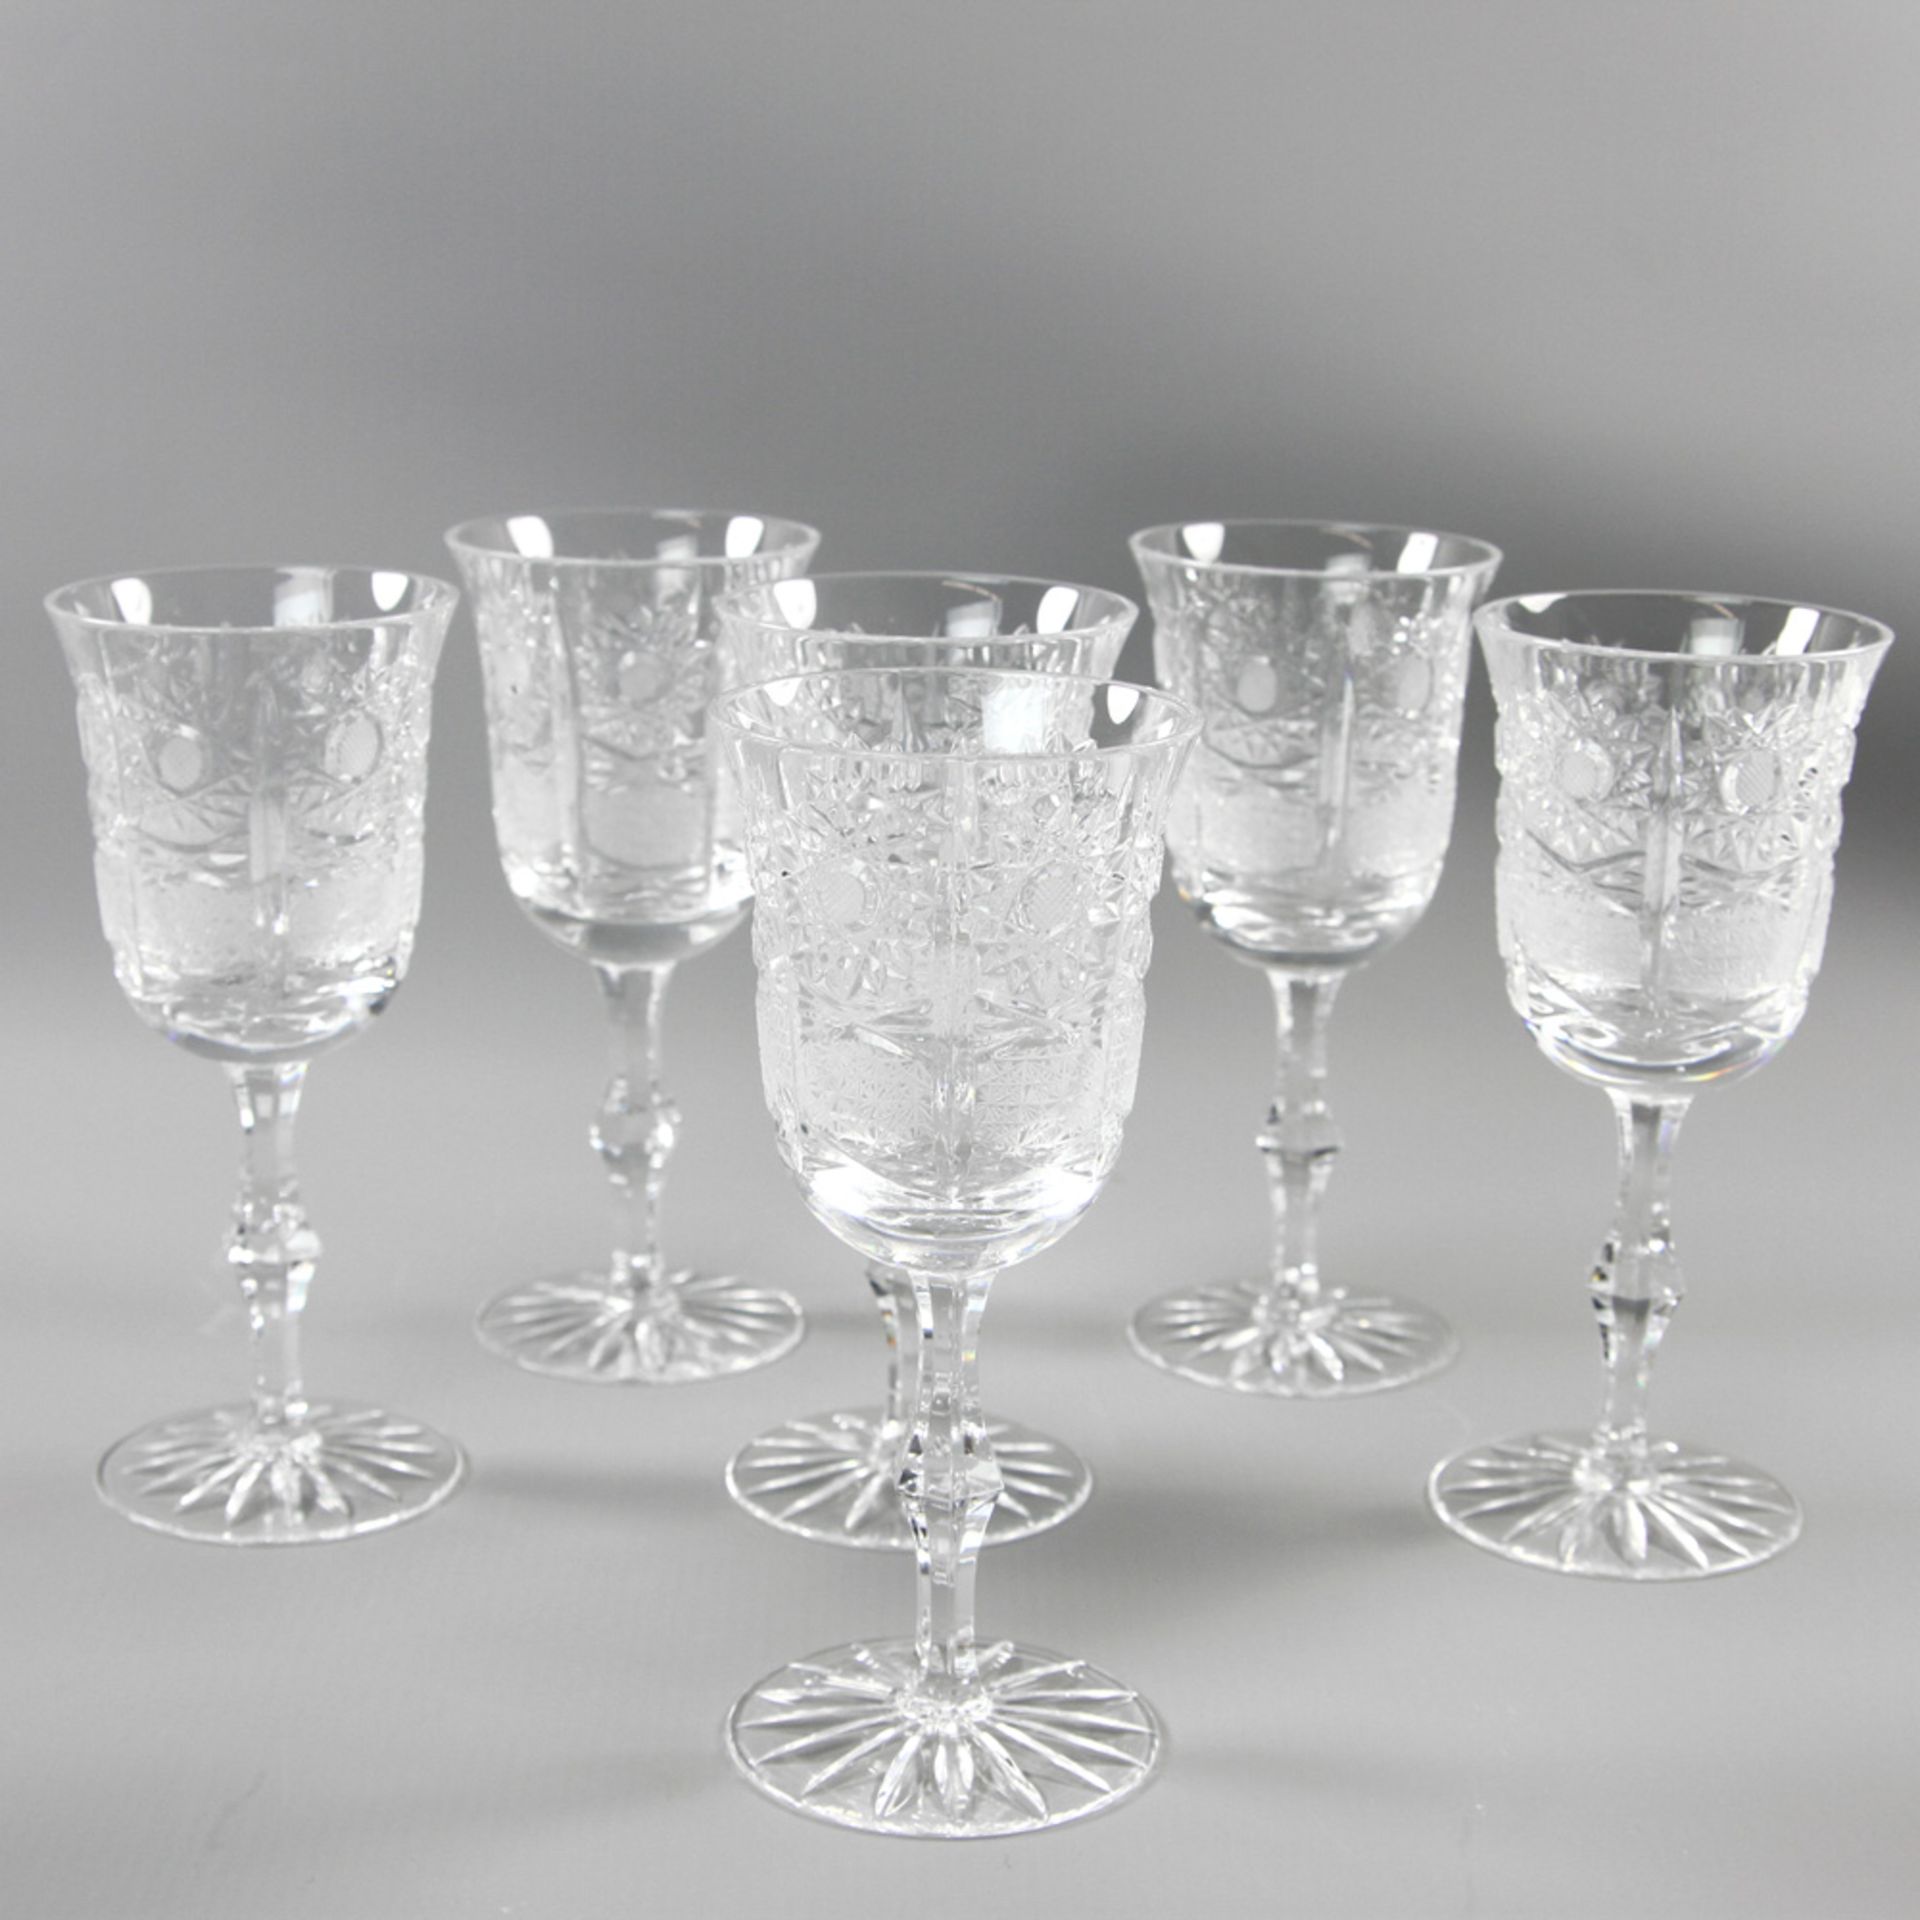 6 Weingläser, 20. Jh. Farbloses Glas mit reichem Schliffdekor, tlw. mattiert. H. ca. 17,5 cm,